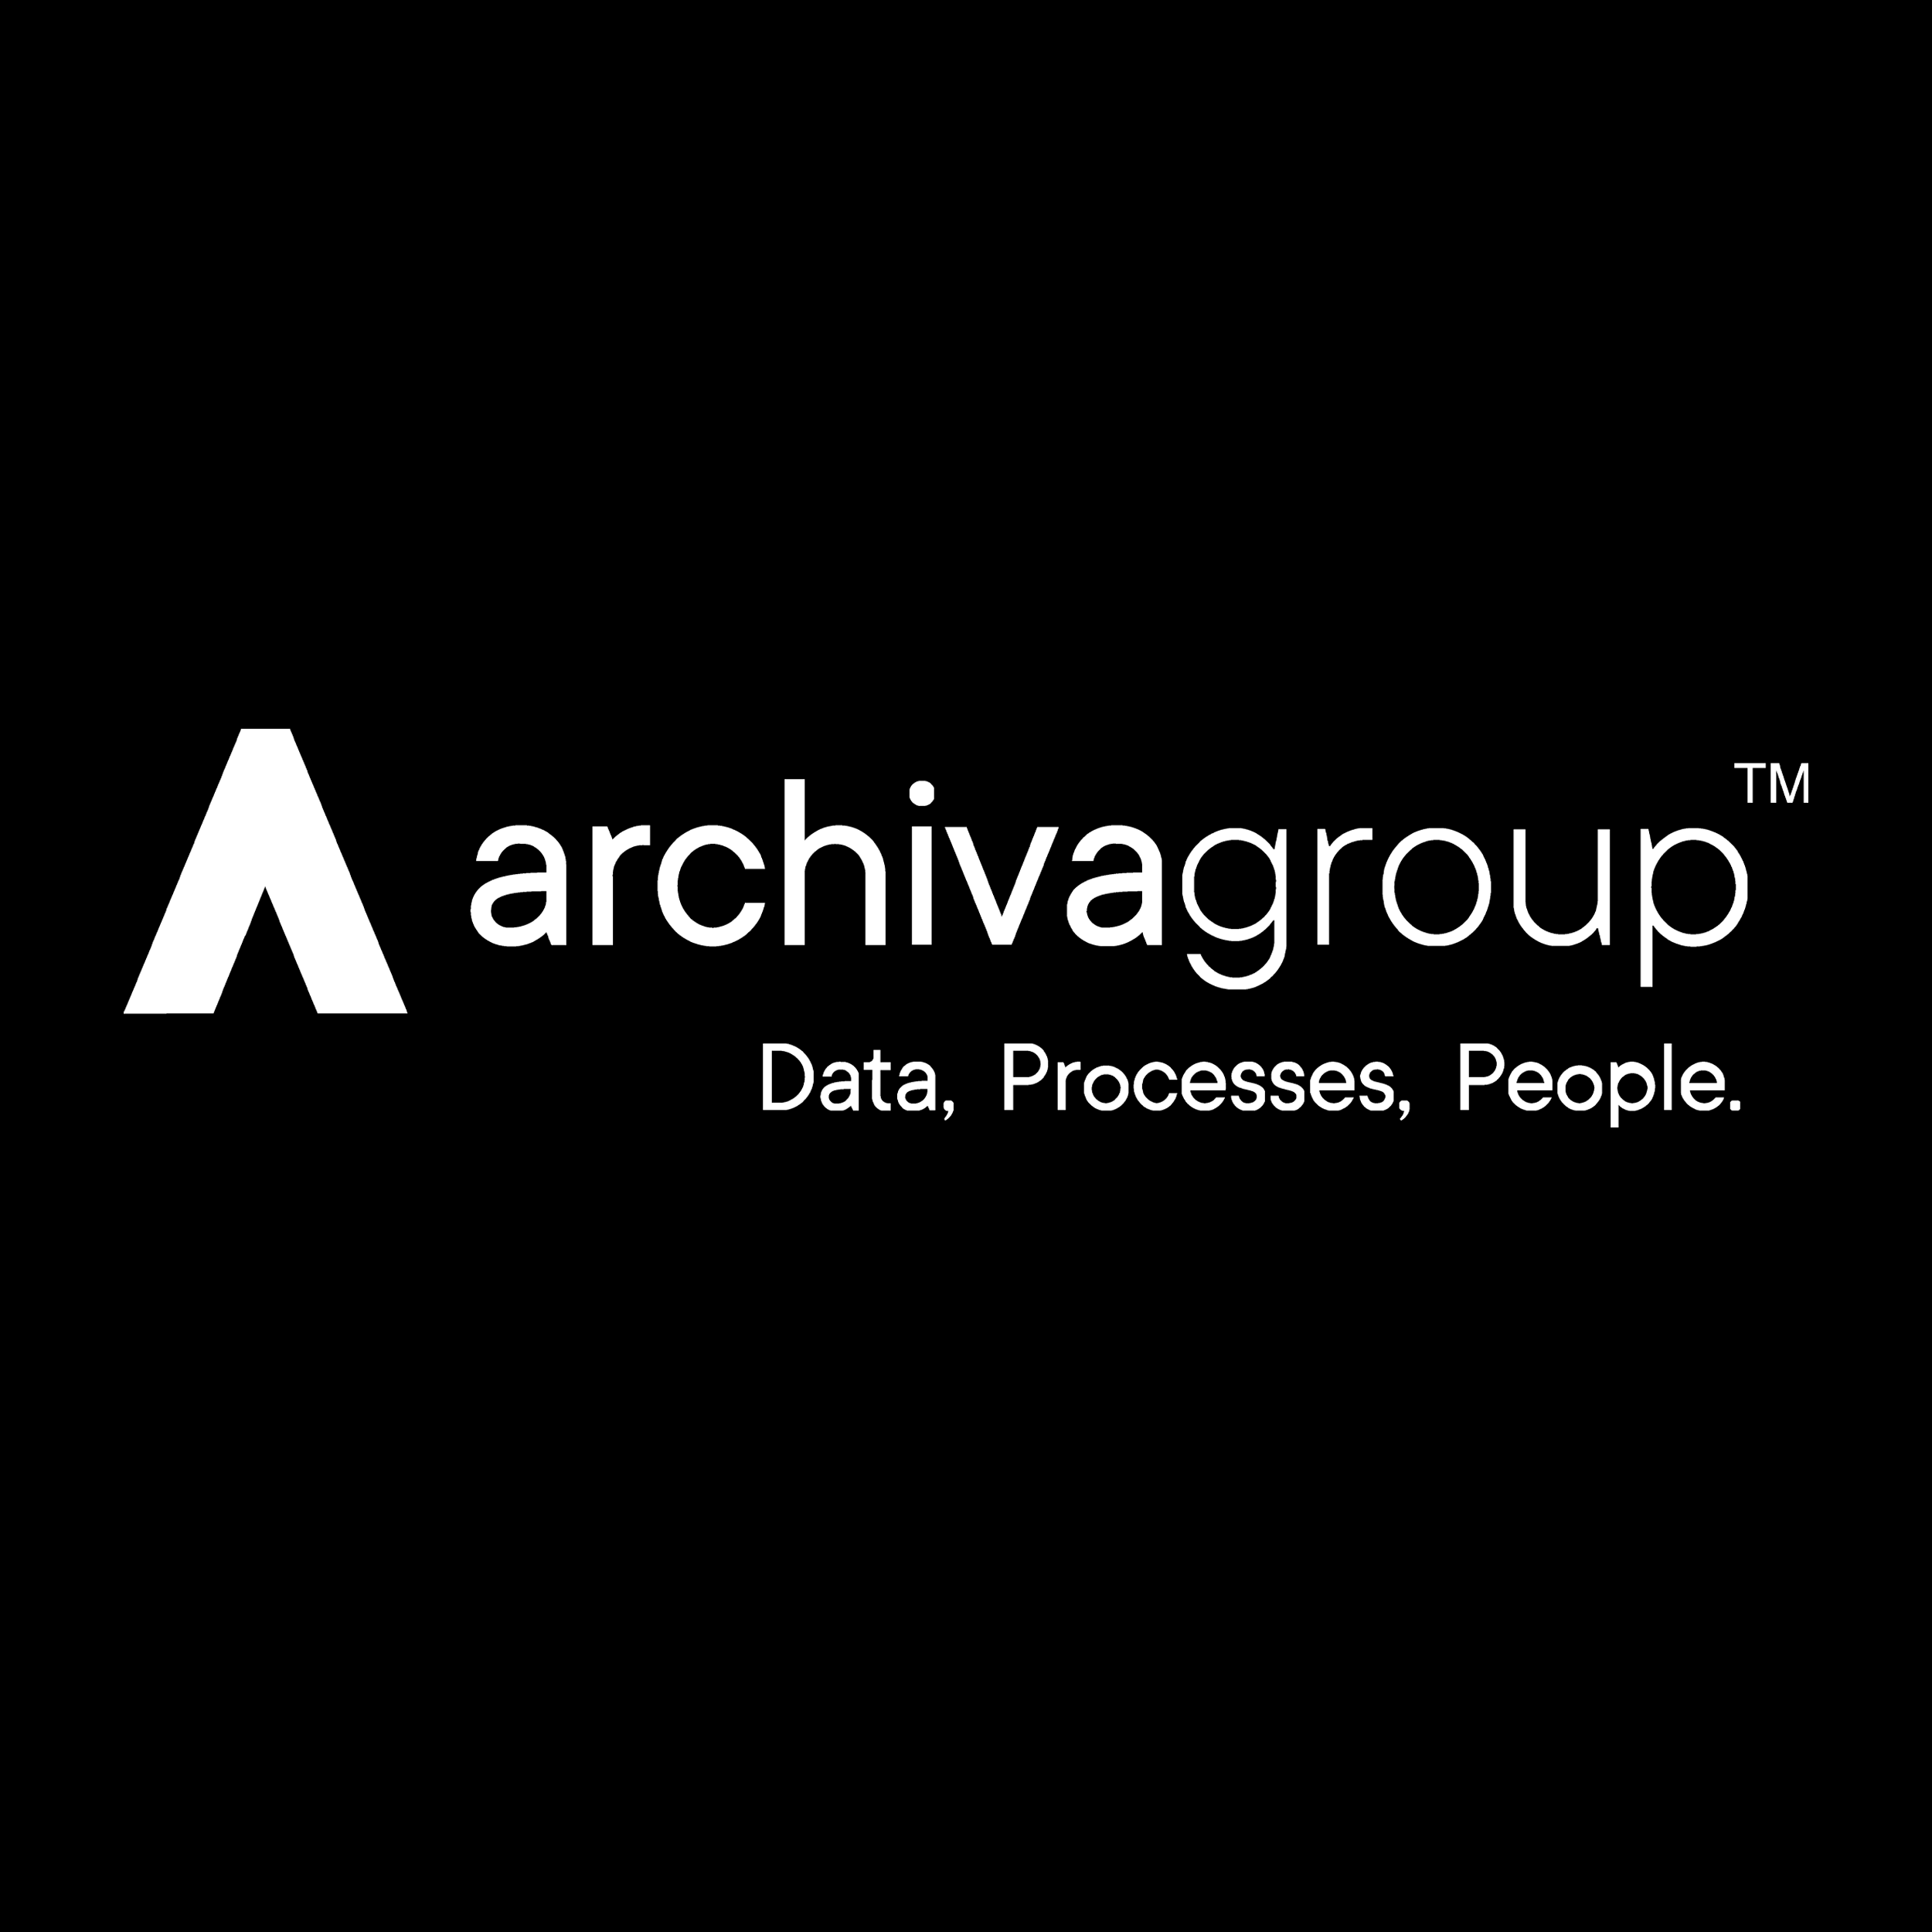 Archiva Group